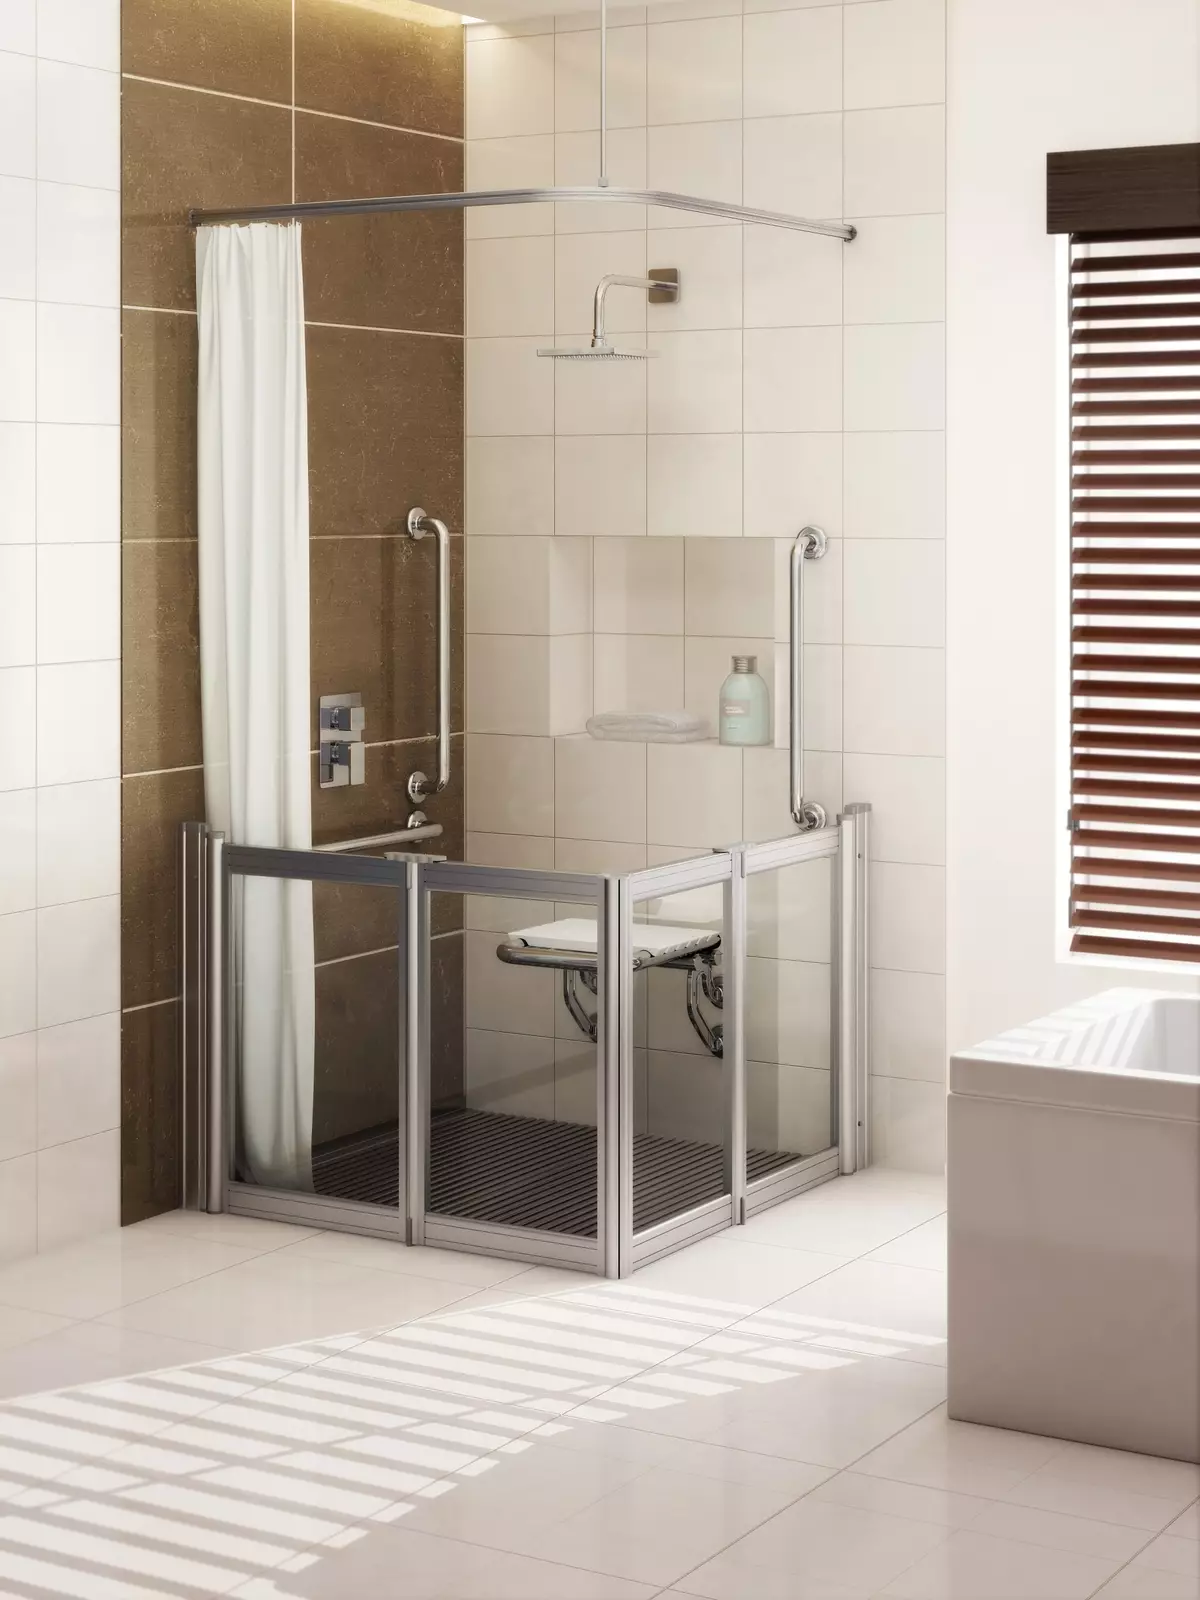 מקלחת ללא מקלחת בחדר האמבטיה (57 תמונות): עיצוב וקישוט של חדר האמבטיה עם סצינת הנשמה ללא בקתה בבית פרטי ודירה 21400_2